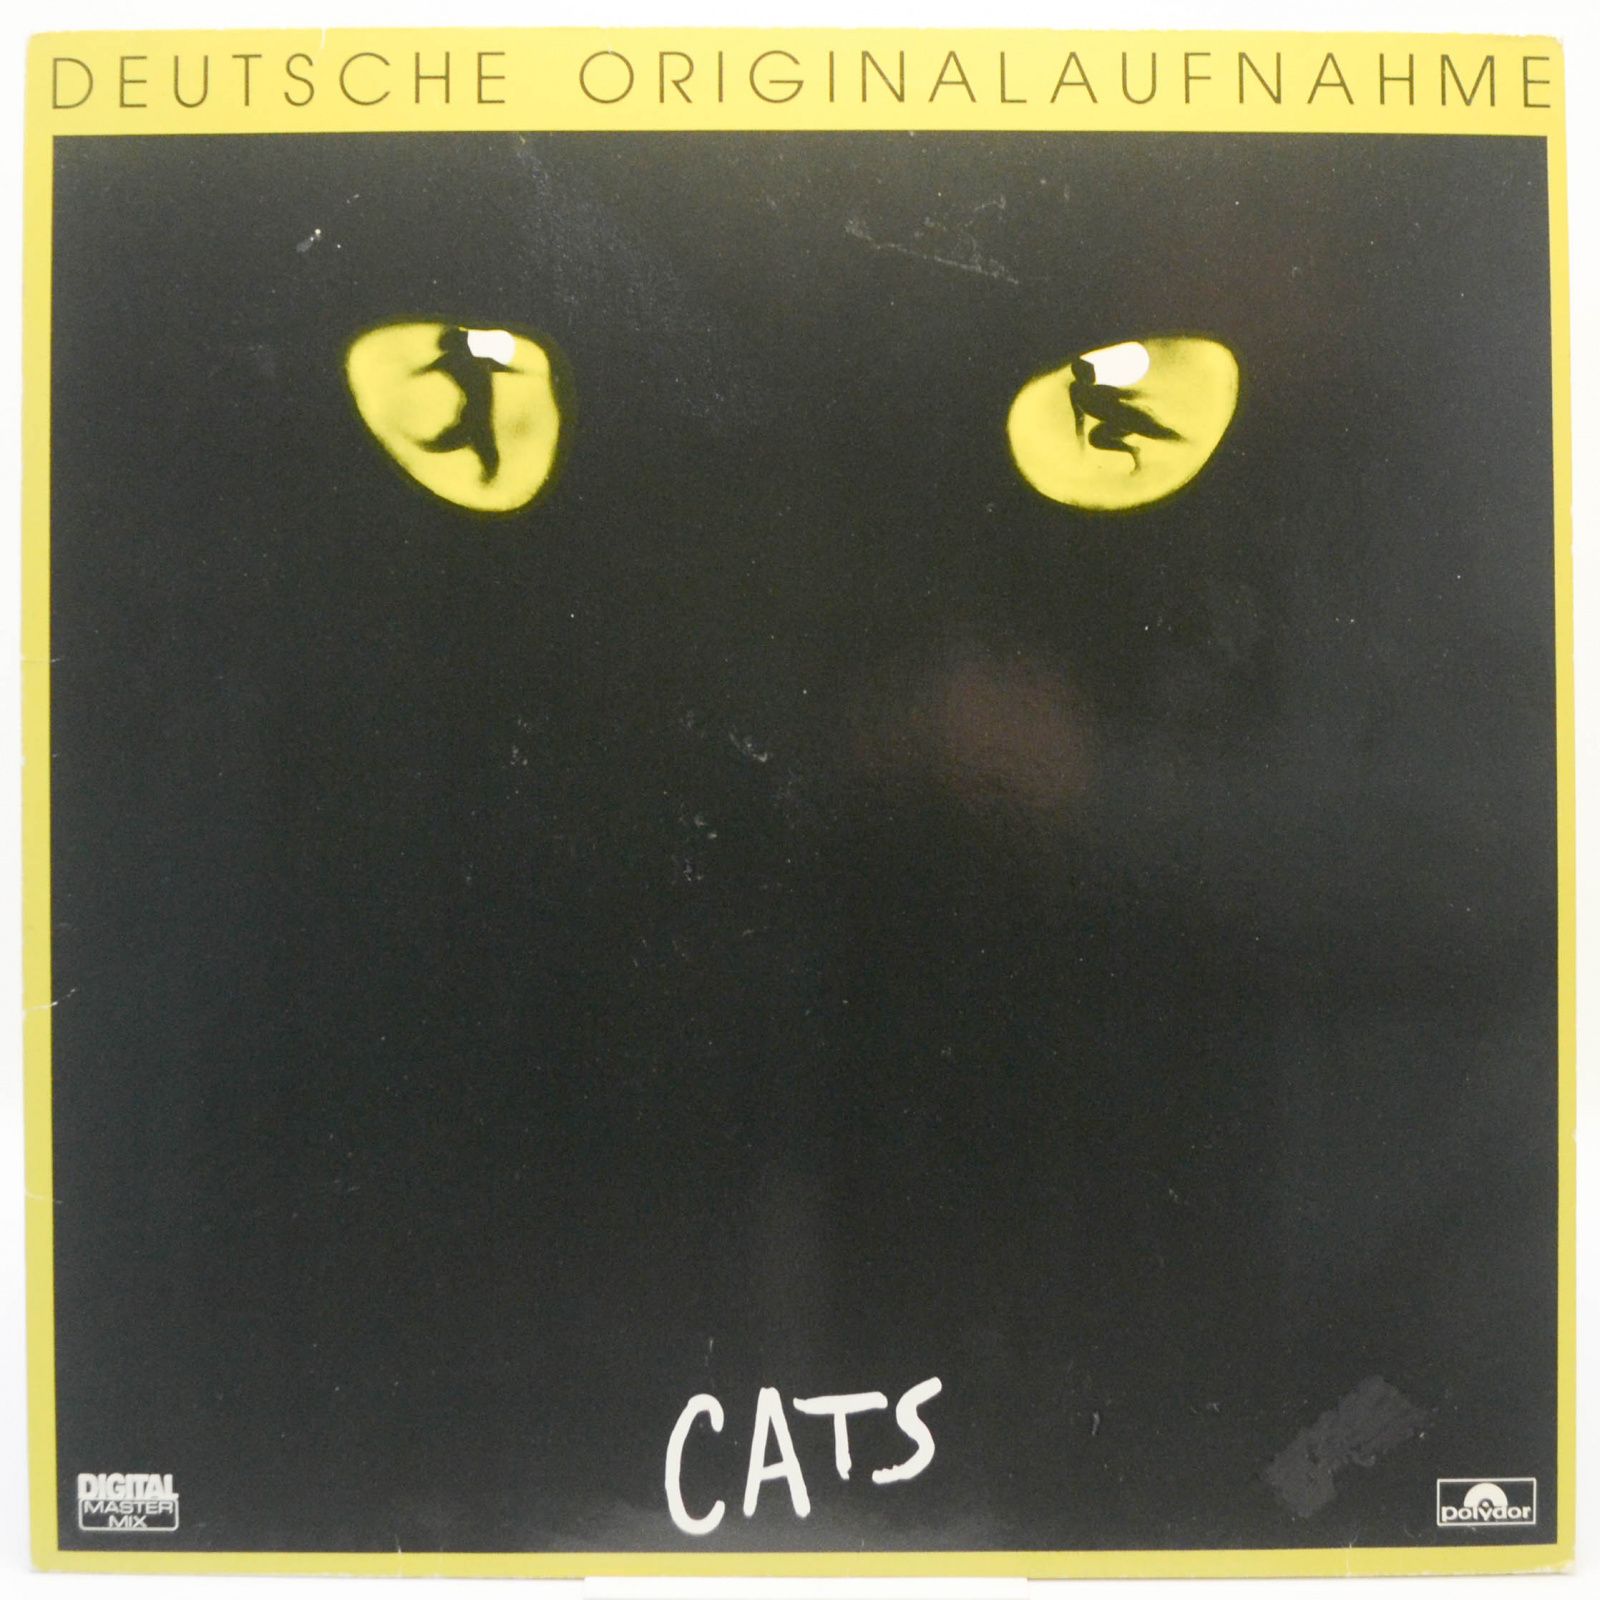 Andrew Lloyd Webber — Cats (Deutsche Originalaufnahme), 1983